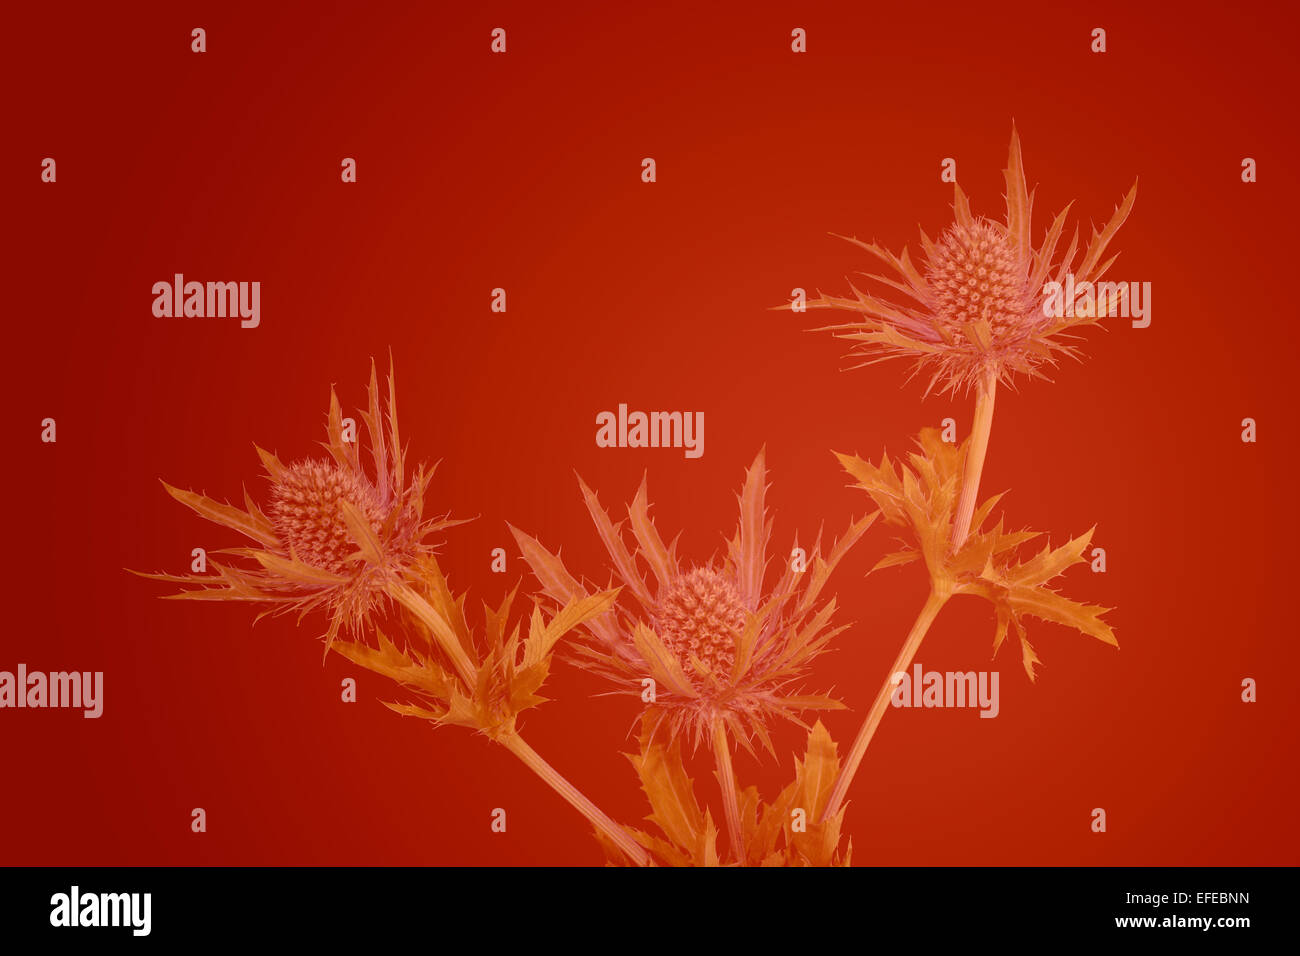 Als Hintergrundbild bestimmt, dies zeigt eine Distel Pflanze, (Echinops), verblassen in einem abgestuften rot/orange Hintergrund mit viel Platz für Text Stockfoto